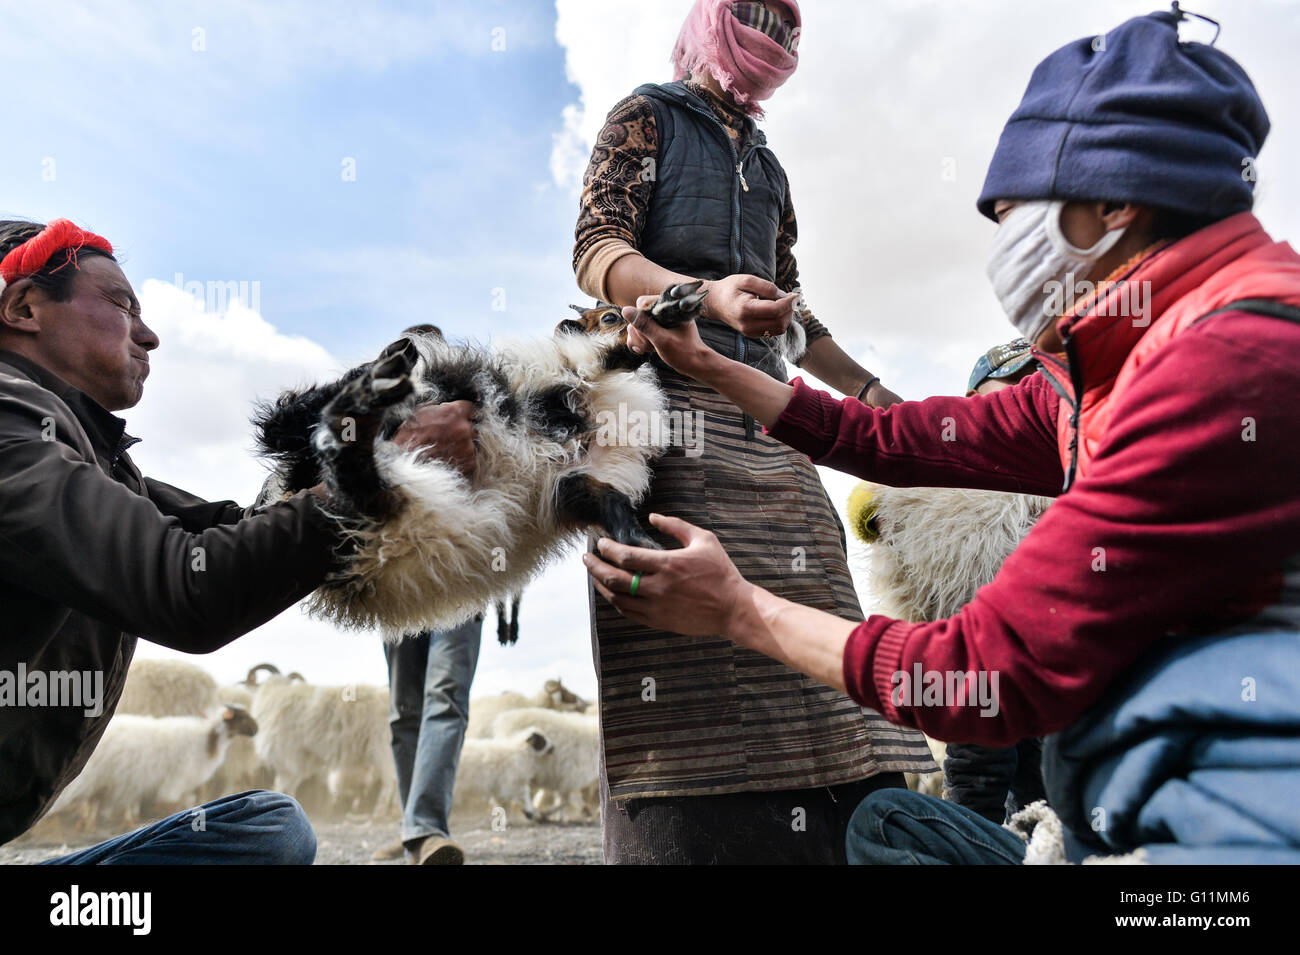 Lhasa, la Cina della regione autonoma del Tibet. Il 5 maggio, 2016. Mandriani preparare castrati ovini maschi sul lungofiume del Nam Co, a sud-ovest della Cina di regione autonoma del Tibet, 5 maggio 2016. Una pecora castrazione cerimonia, che è stata osservata per più di mille anni dai mandriani che vivono nella parte settentrionale della regione del Tibet, si è tenuta sul lungofiume del Nam Co. Al fine di pecore di razza di migliore qualità, nonostante qualche robusto ovini maschi, la maggior parte degli ovini maschi di più di 5 mesi di età saranno qui e castrati allevati come carni di montone pecore. © Purbu Zhaxi/Xinhua/Alamy Live News Foto Stock